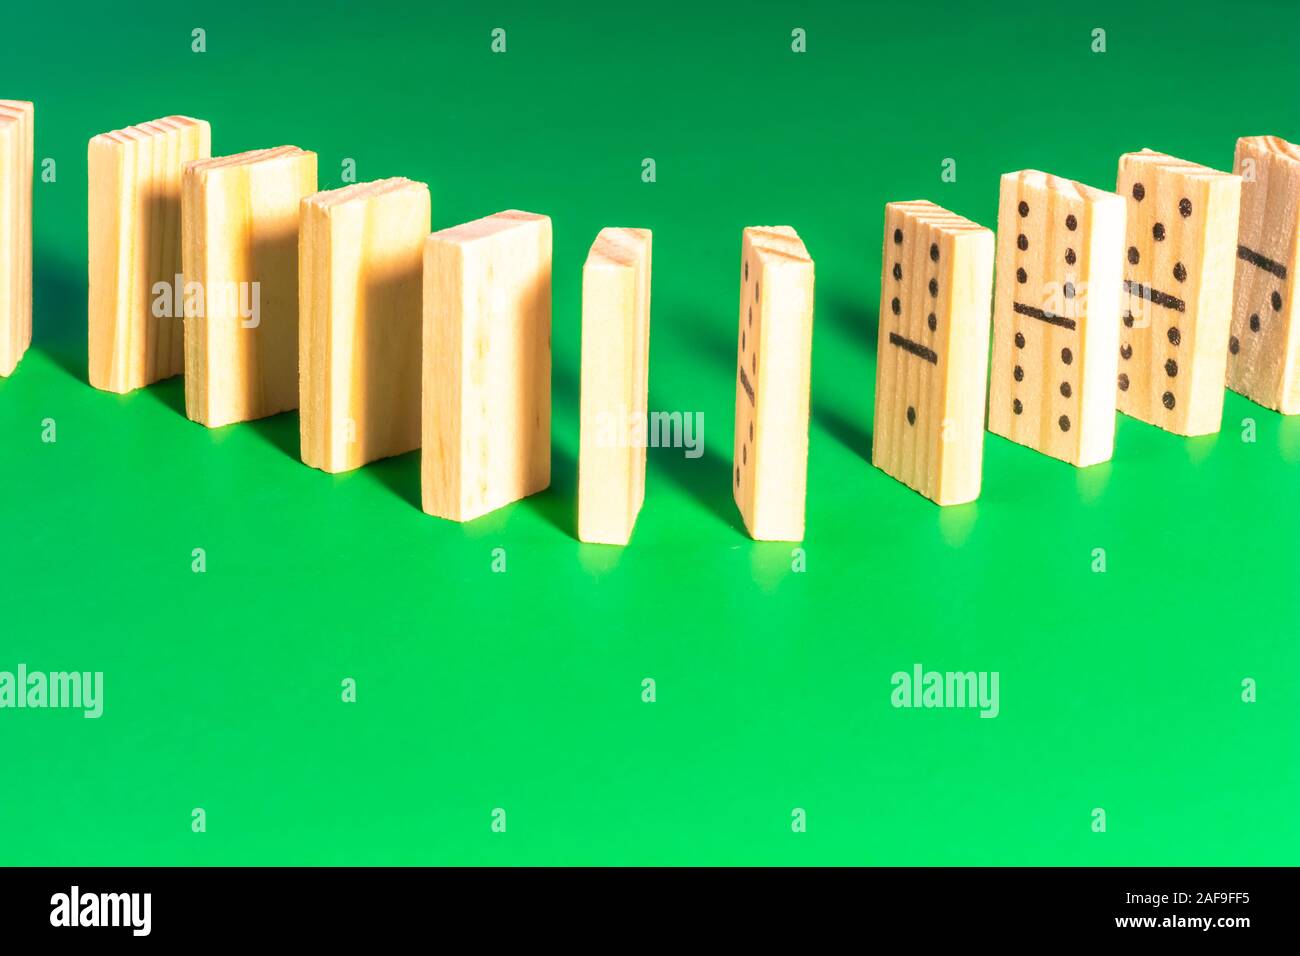 Eine Kurve in einer Linie ausgerichtet sind Holz- Domino steht auf einem soliden grüne Fläche. Die Steine sind nicht für das Spiel konfiguriert, aber für Klopfen o Stockfoto